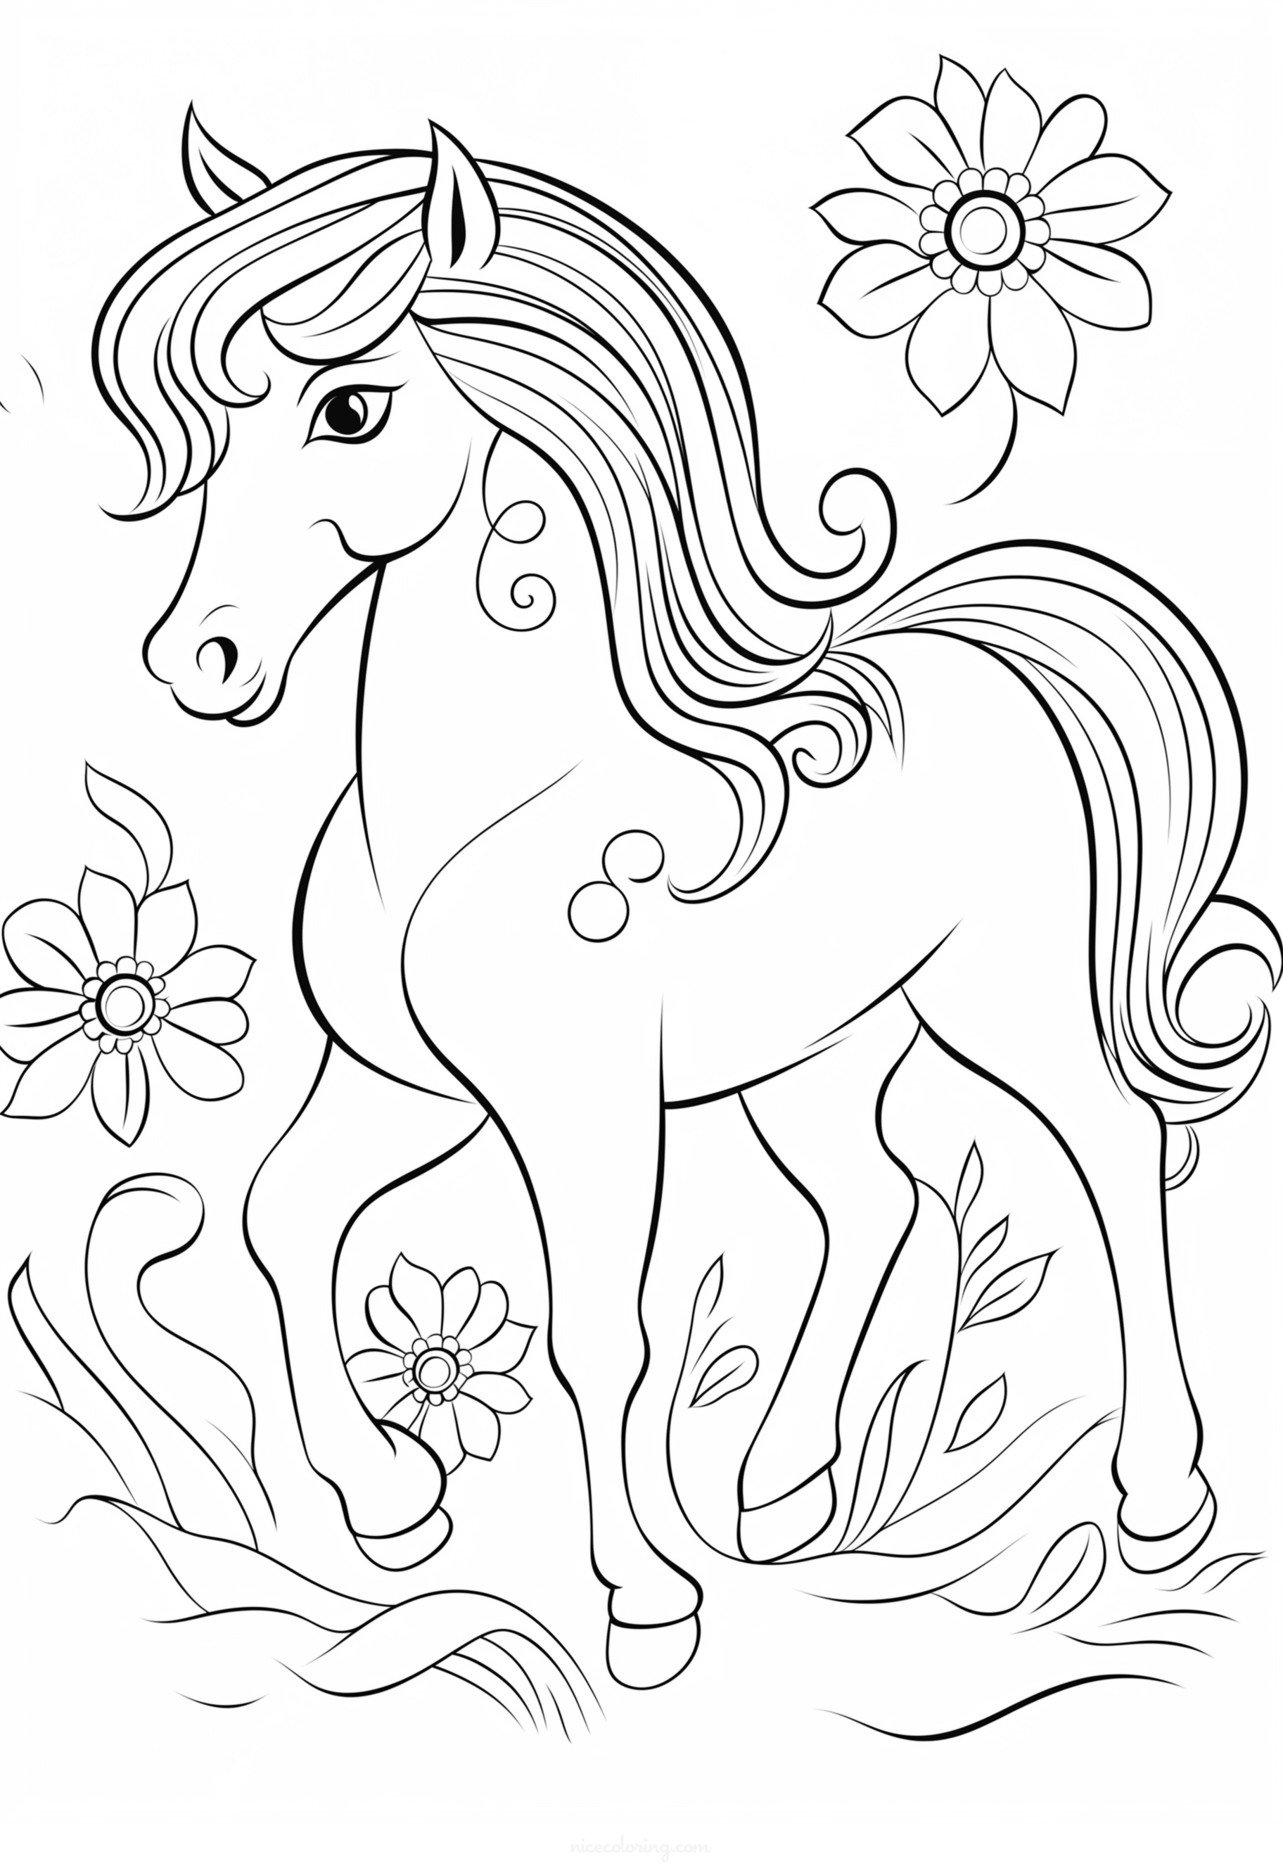 घोडा रंगवण्याचं पान